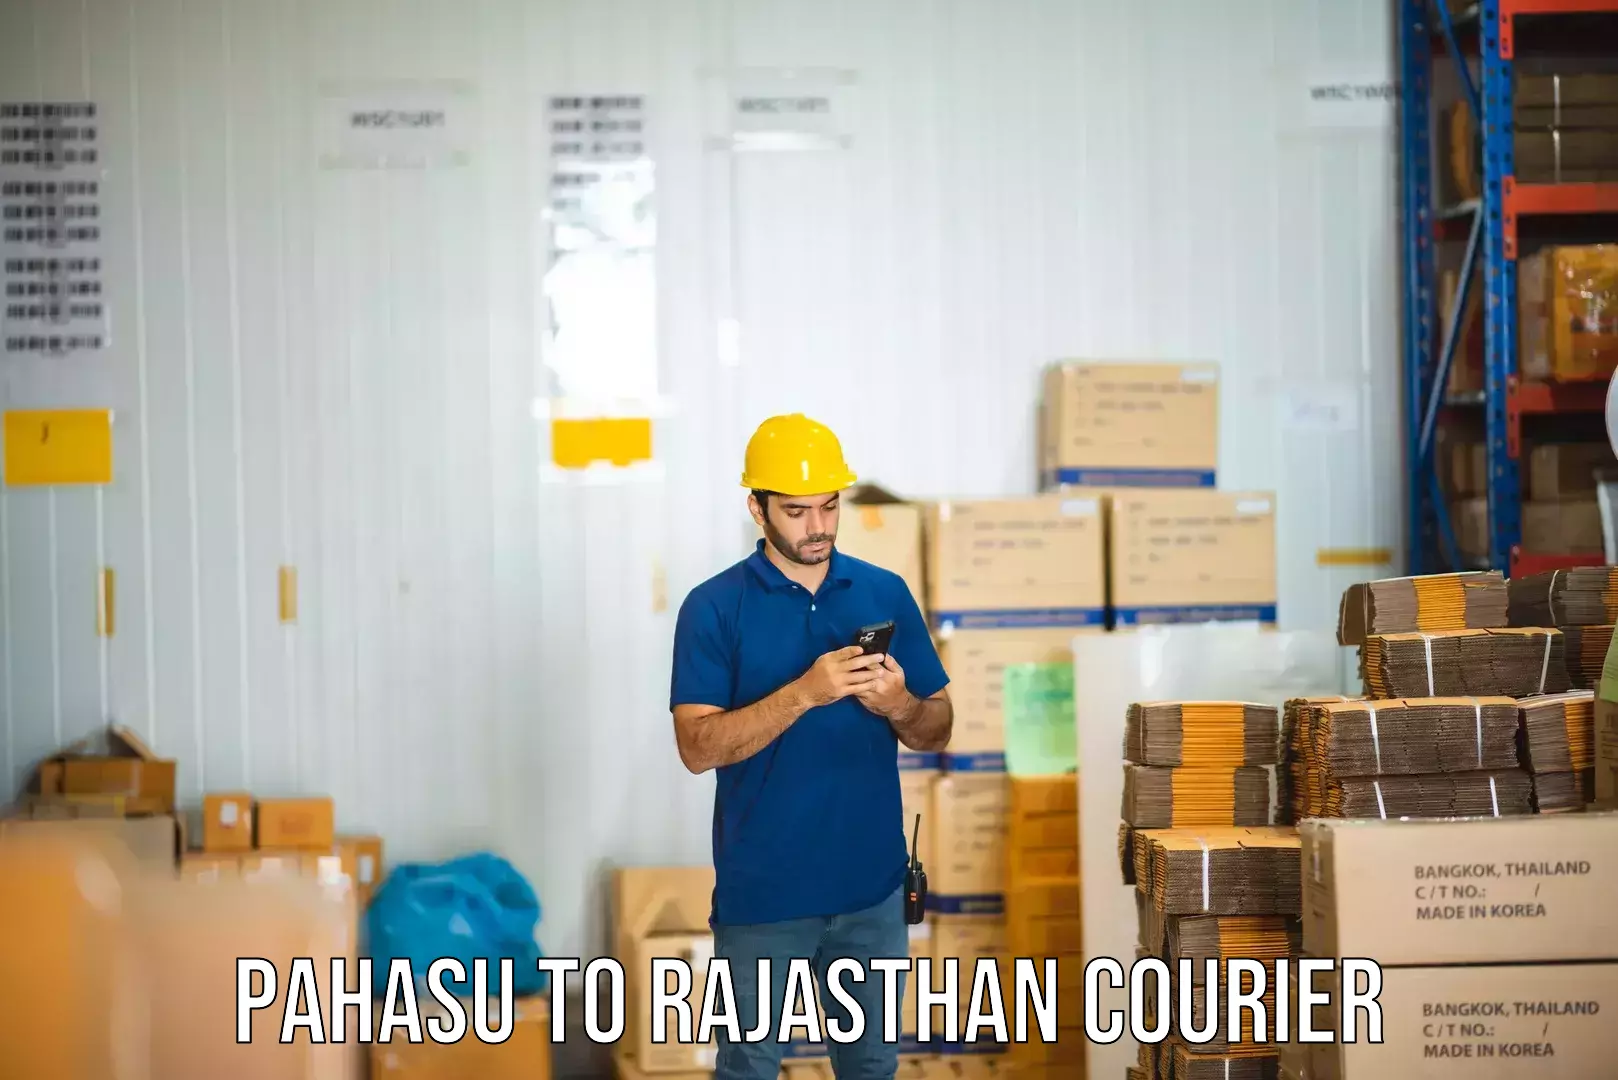 Urban courier service Pahasu to Parbatsar